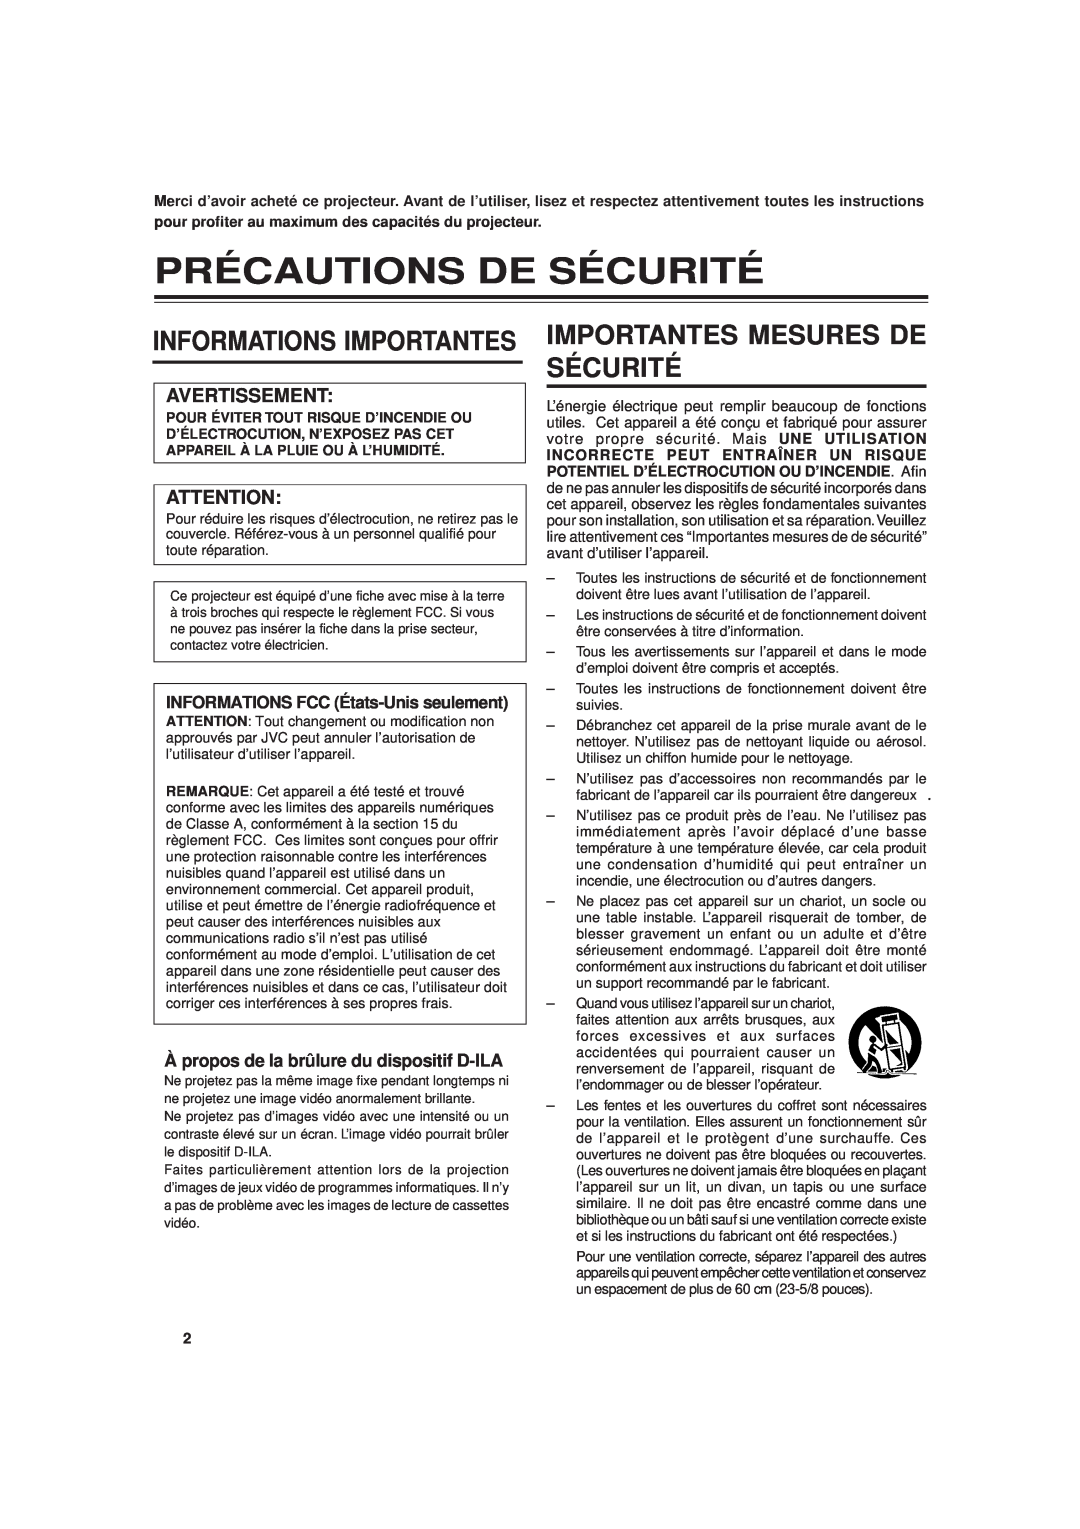 JVC DLA-G20U manual Précautions De Sécurité, Importantes Mesures De Sécurité, Informations Importantes 